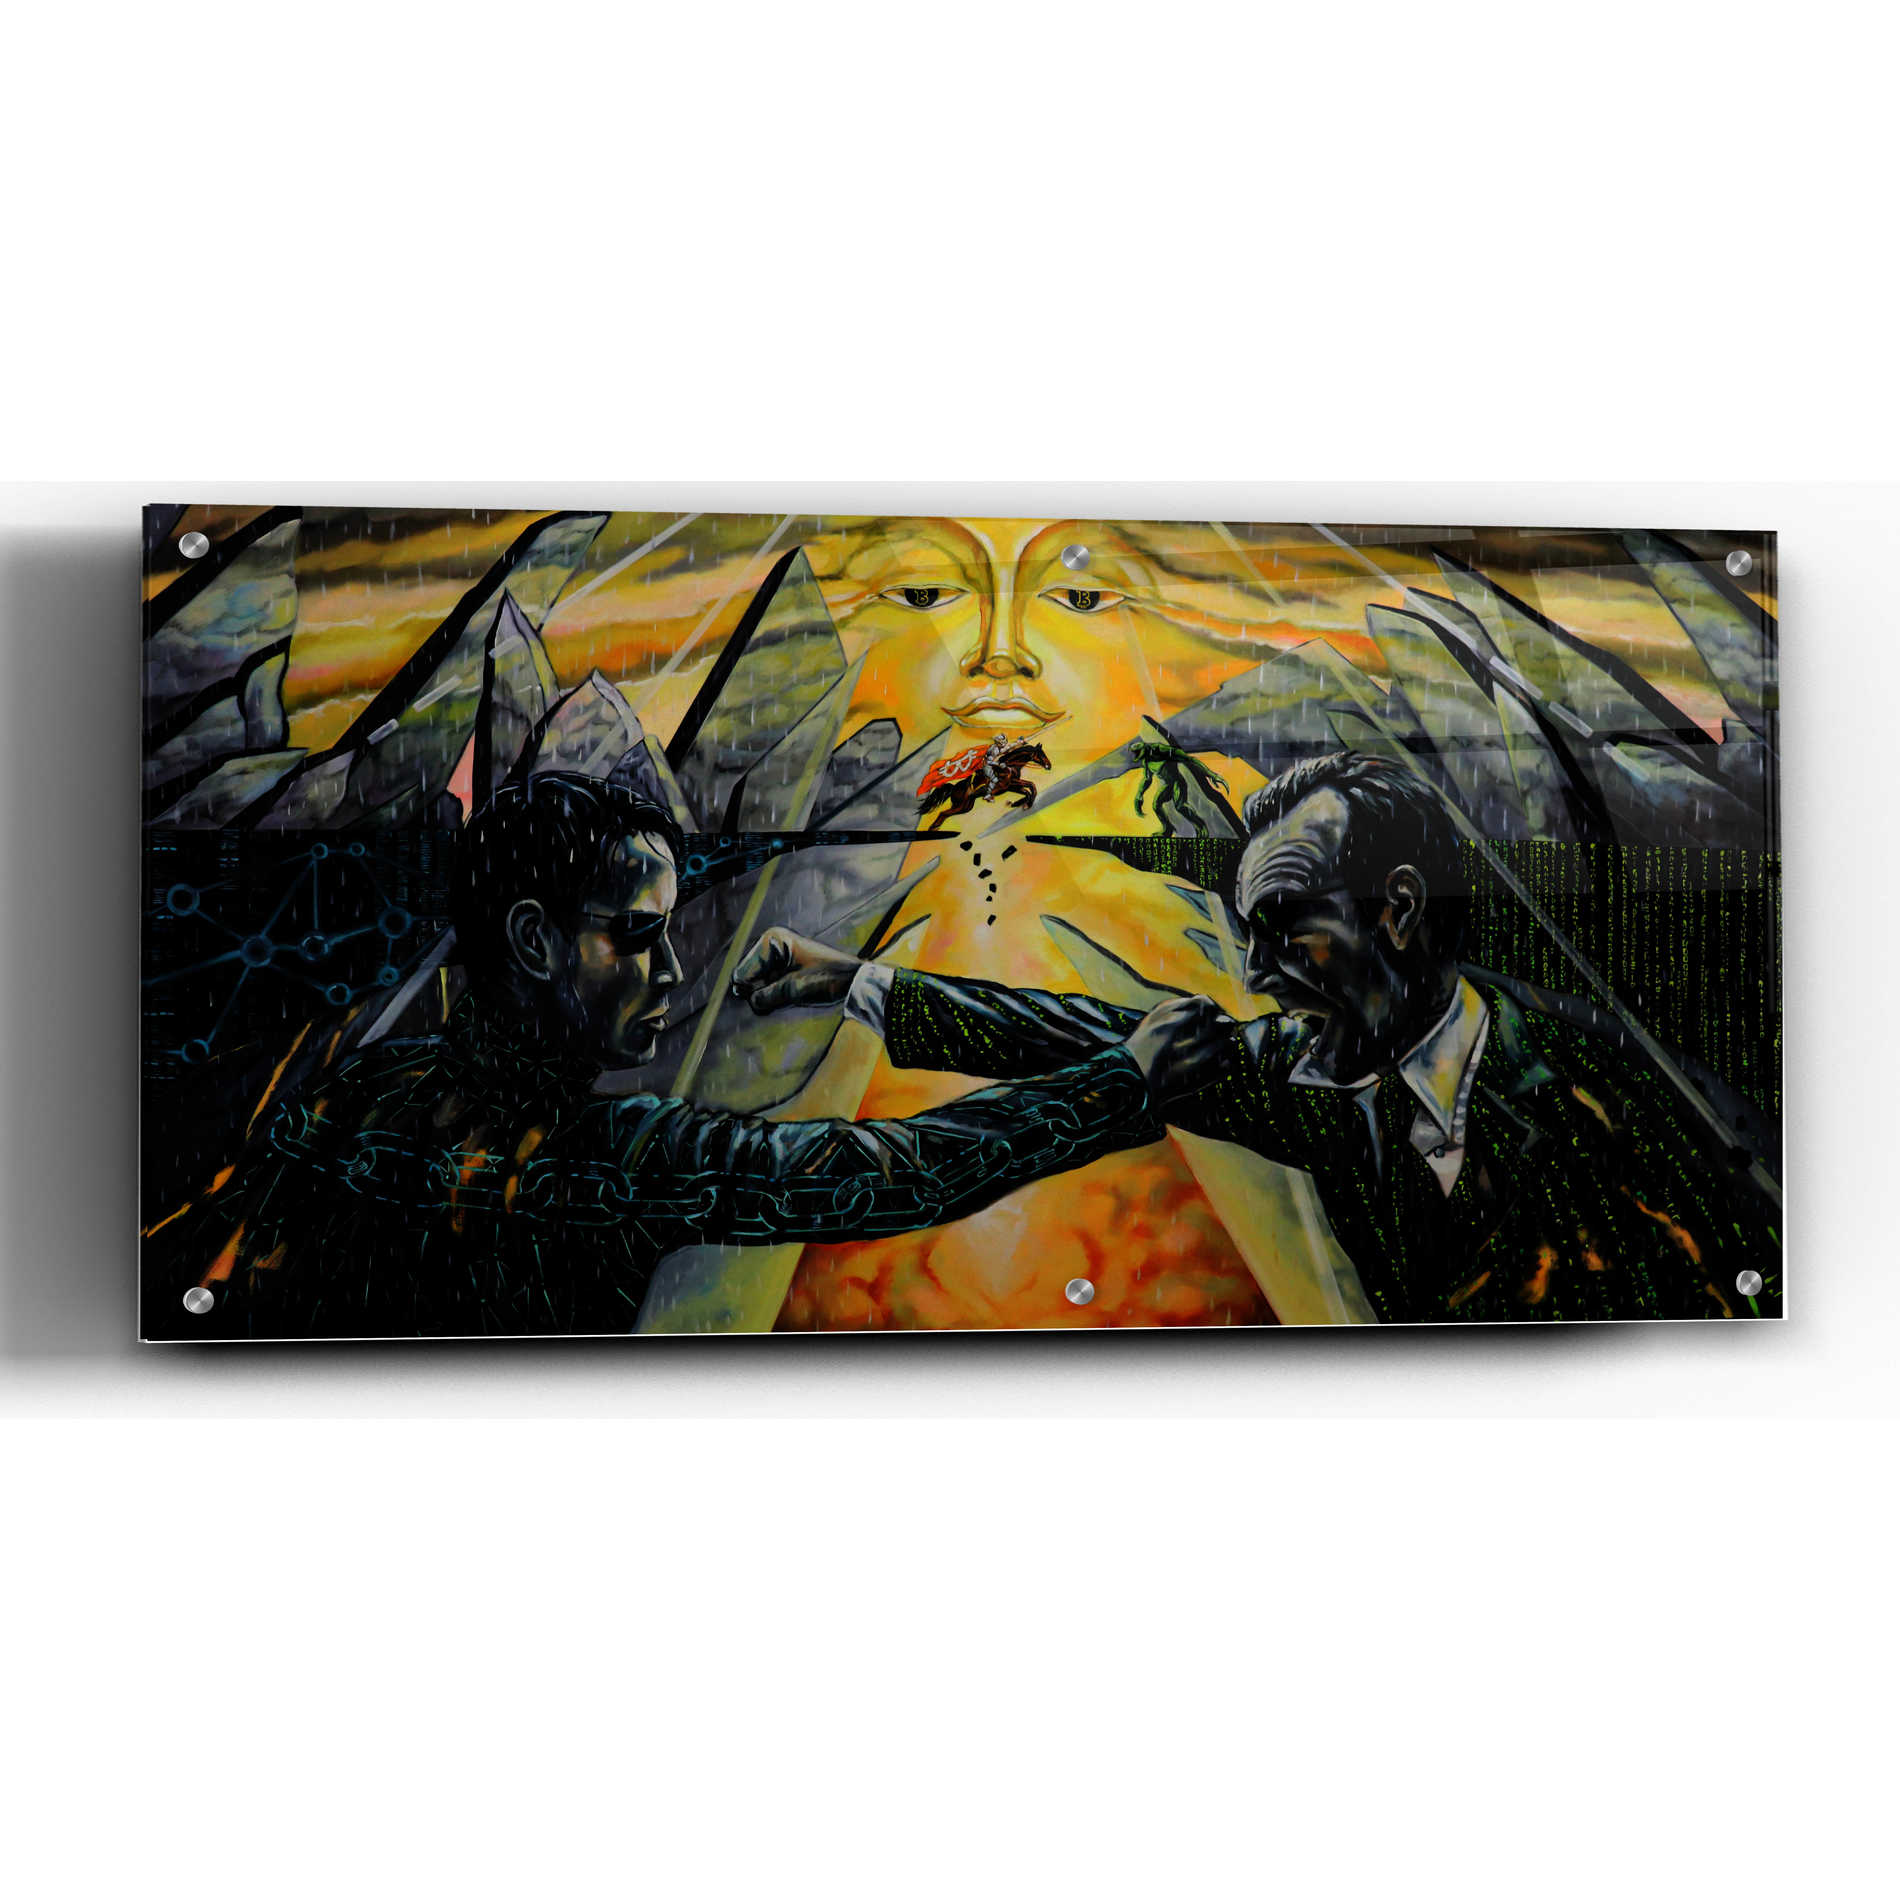 Epic Art 'Battle' by Jan Kasparec, Acrylic Glass Wall Art,48x24